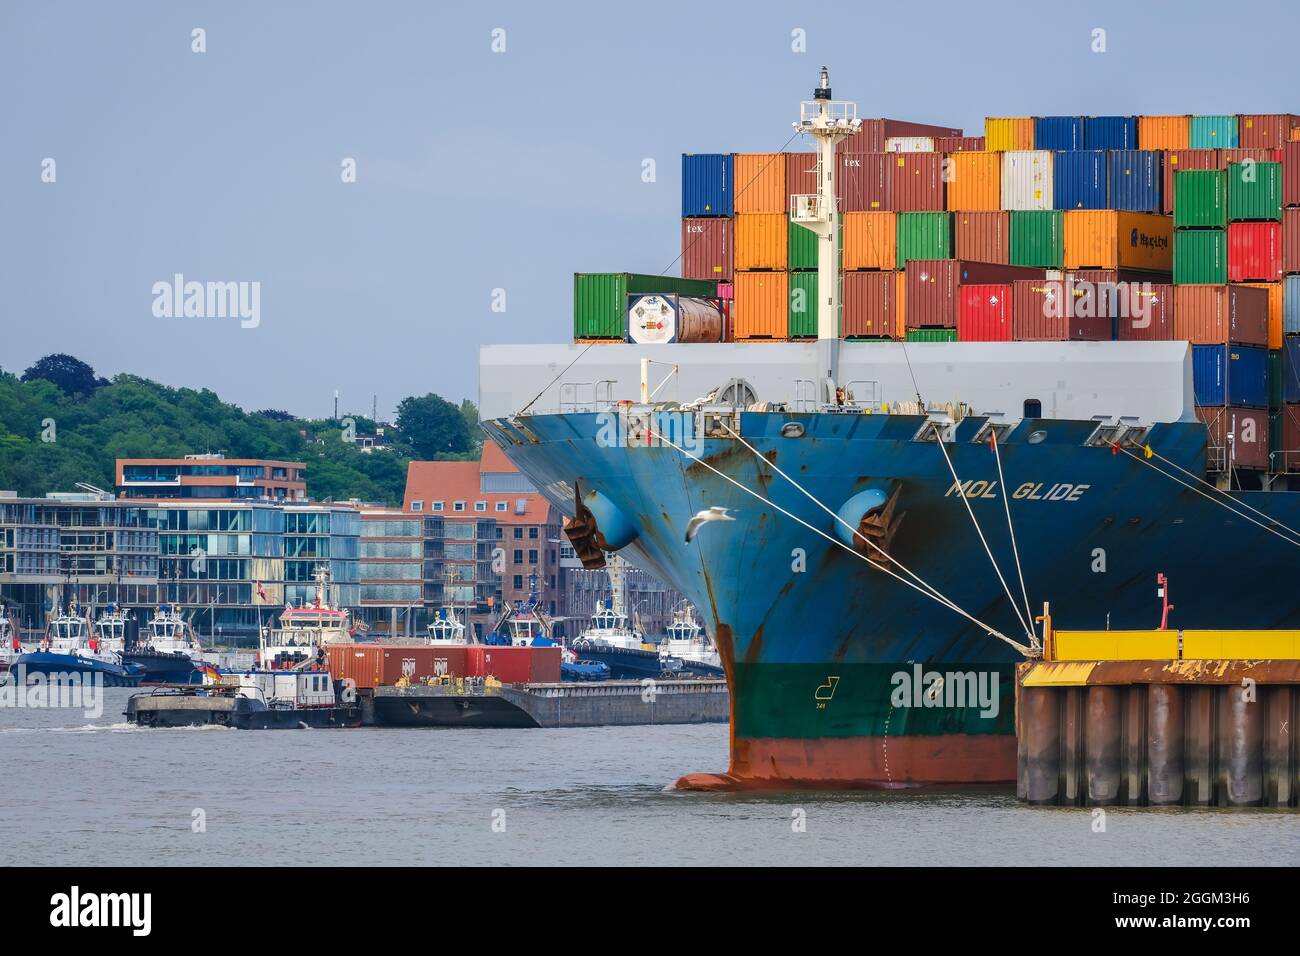 Hambourg, Allemagne - bateau à conteneurs dans le port de Hambourg, le bateau à conteneurs de 275 mètres de long mol Glide transporte jusqu'à 5,605 conteneurs maritimes. Dans le bâtiment arrière à Altona. Le port de Hambourg est le point final de la route maritime de la soie vers la Chine. Banque D'Images